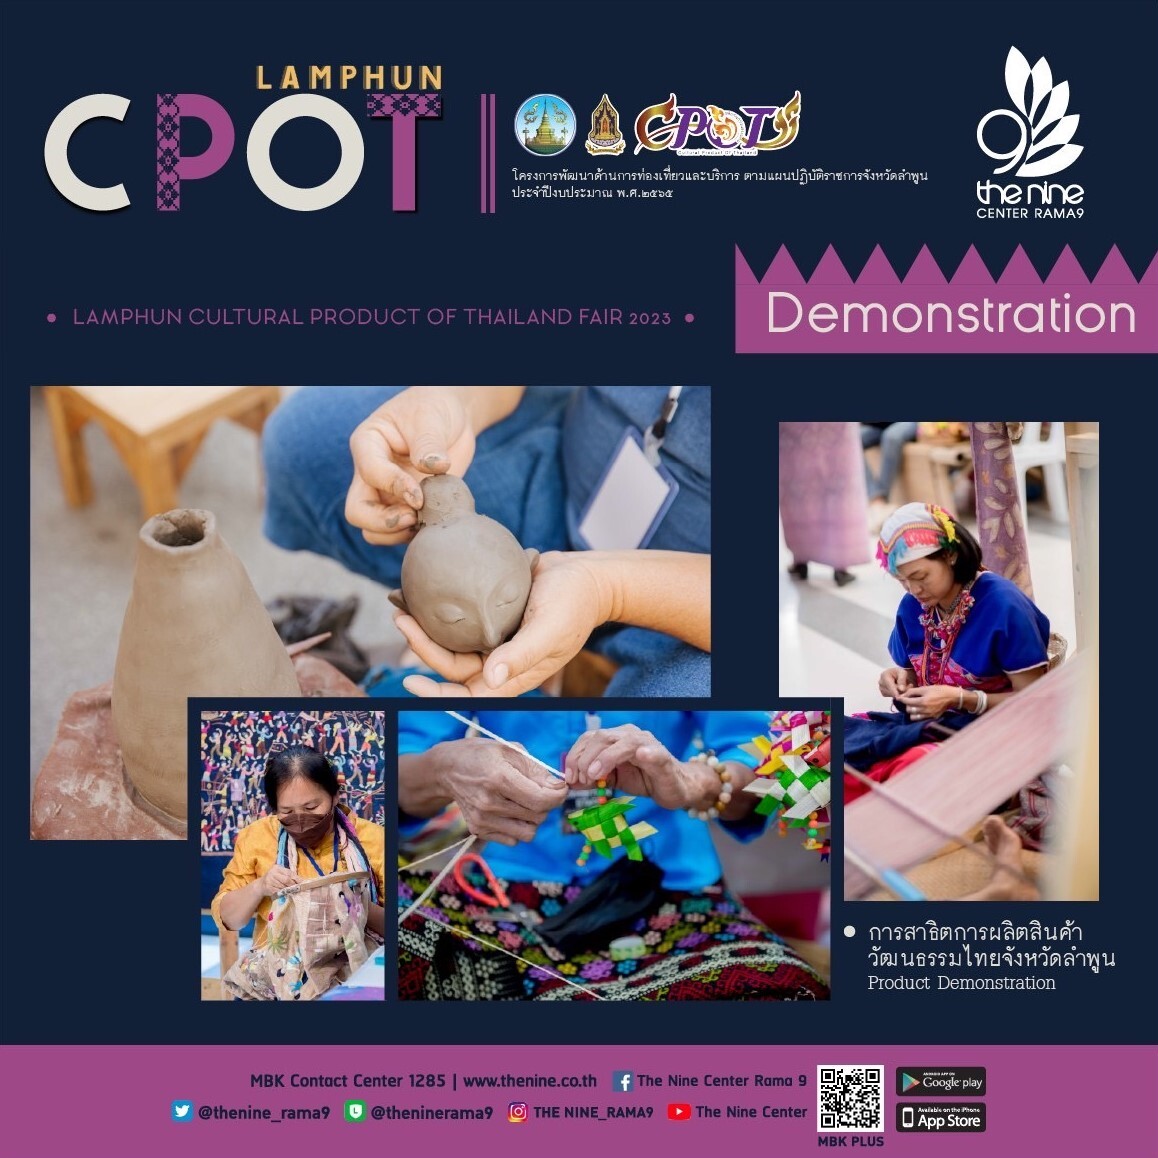 เดอะไนน์ เซ็นเตอร์ พระราม 9 ชวนช้อปผลิตภัณฑ์ท้องถิ่น ชมวัฒนธรรมจังหวัดลำพูน "Lamphun Cultural Product of Thailand Fair 2023"